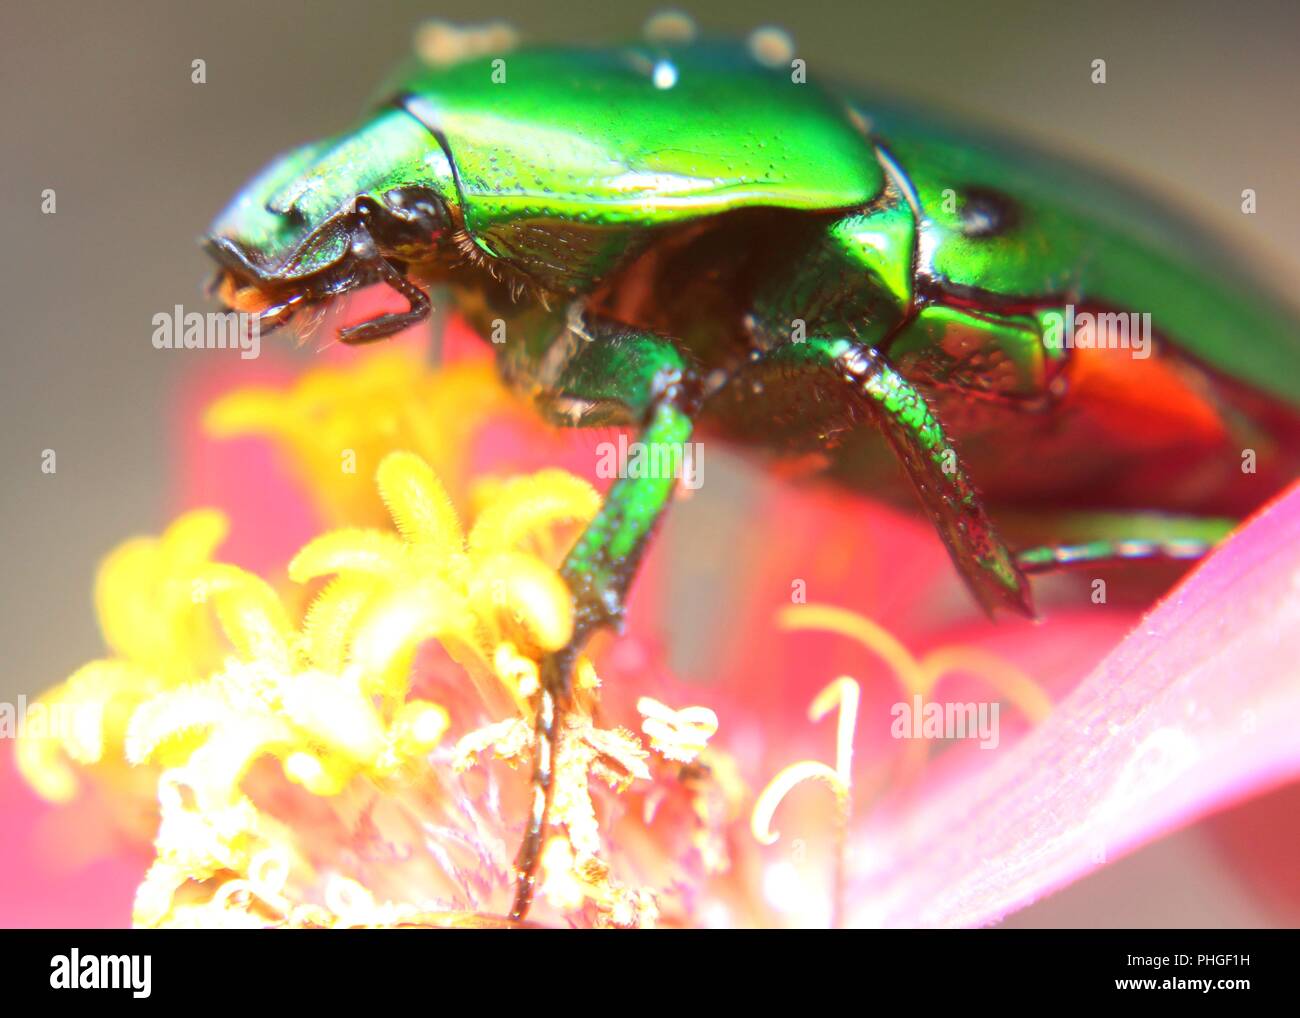 Nahaufnahme der eine leuchtende grüne Farbe, Insekt, Mistkäfer, heilige Skarabäus in einem Garten in Sri Lanka gefunden Stockfoto